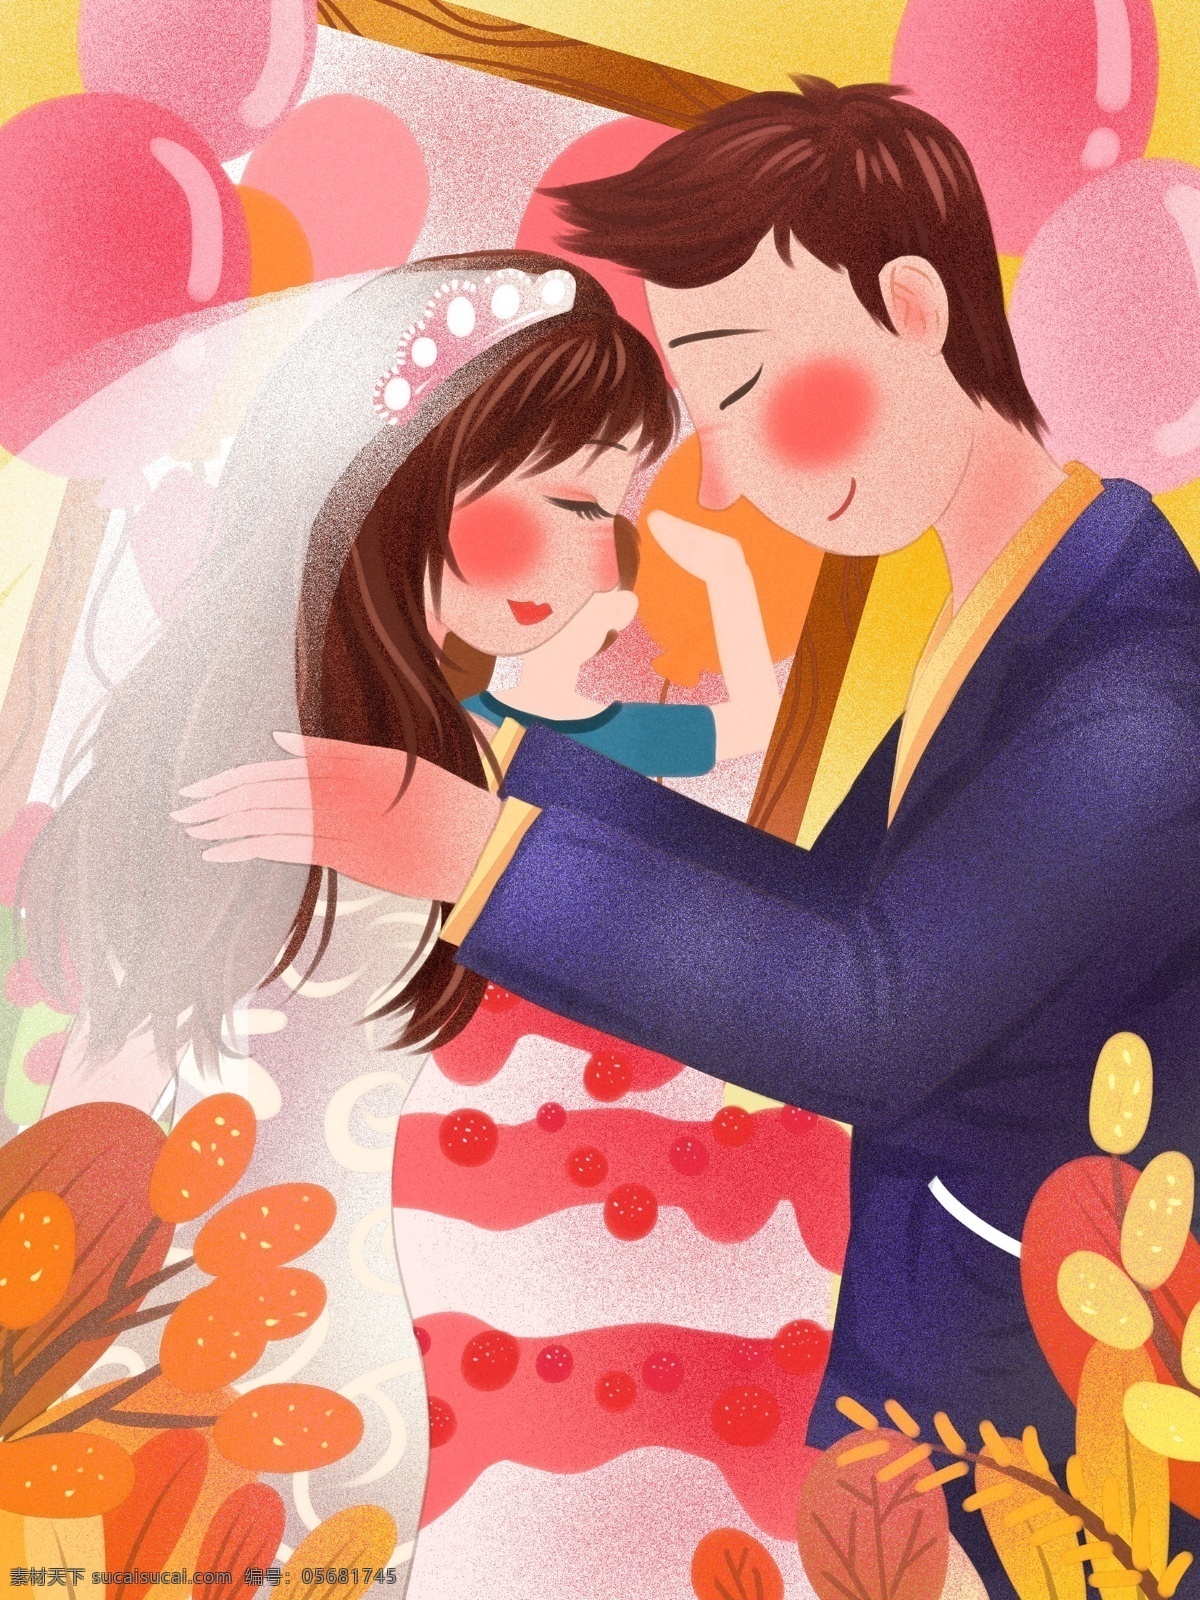 粉红 浪漫 温馨 婚礼 party 新郎 拥 新娘 入 怀 气球 相框 清新 婚礼蛋糕 头纱 相拥